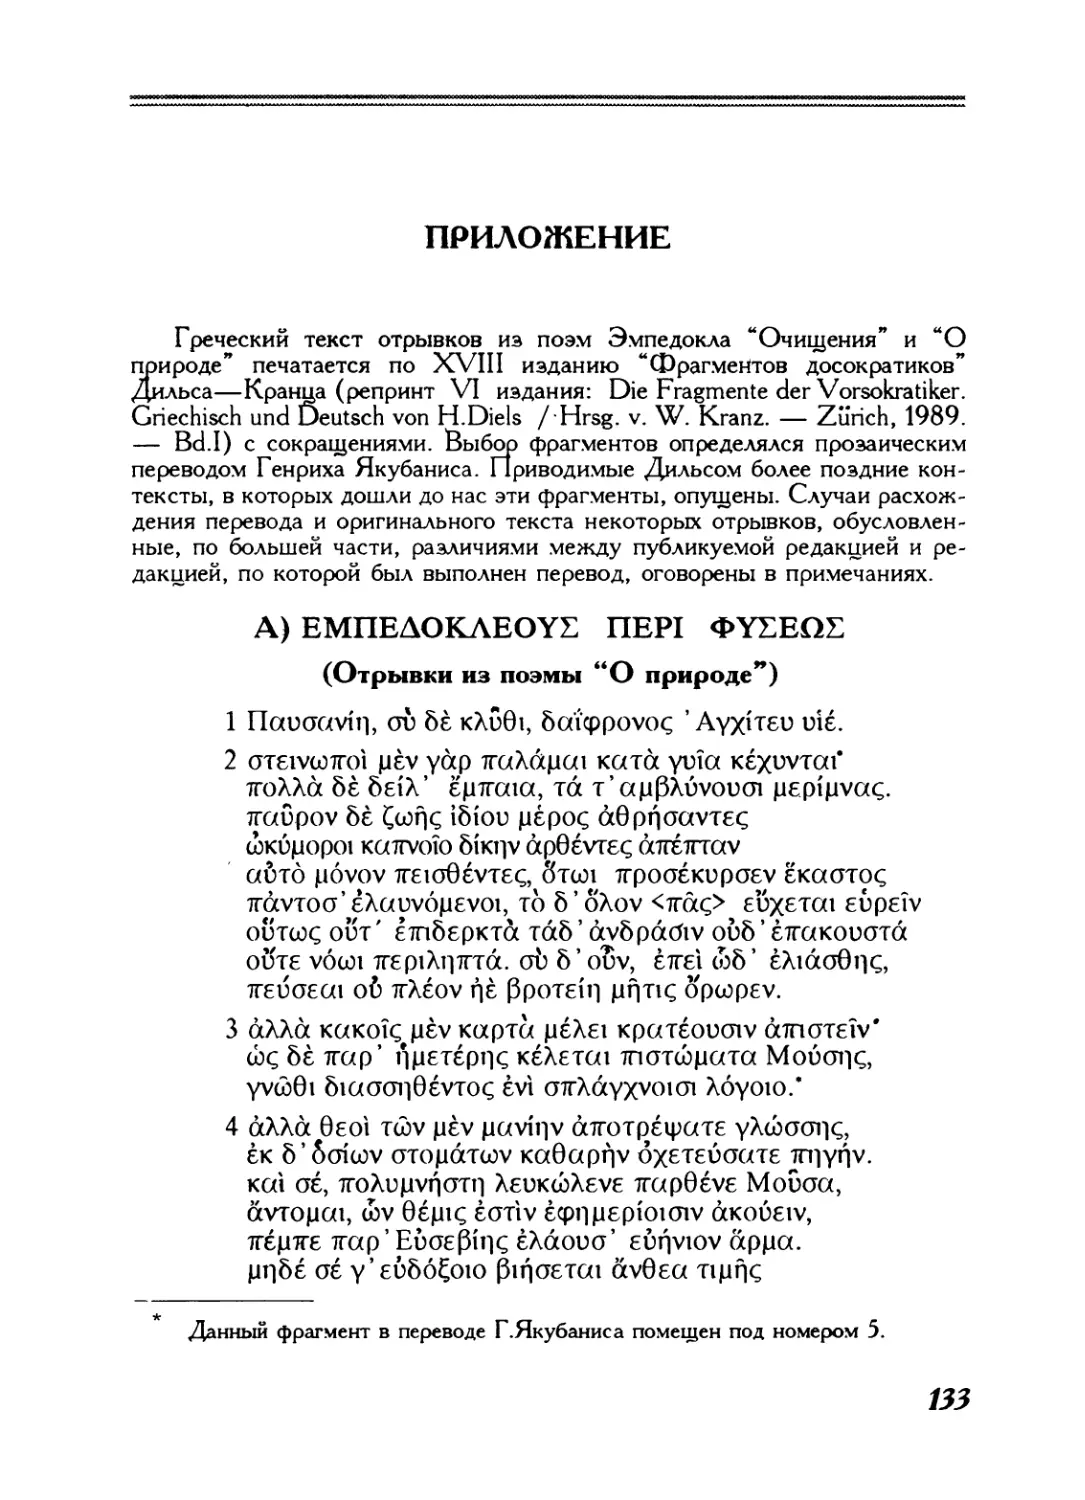 Приложение. Греческий текст фрагментов Эмпедокла